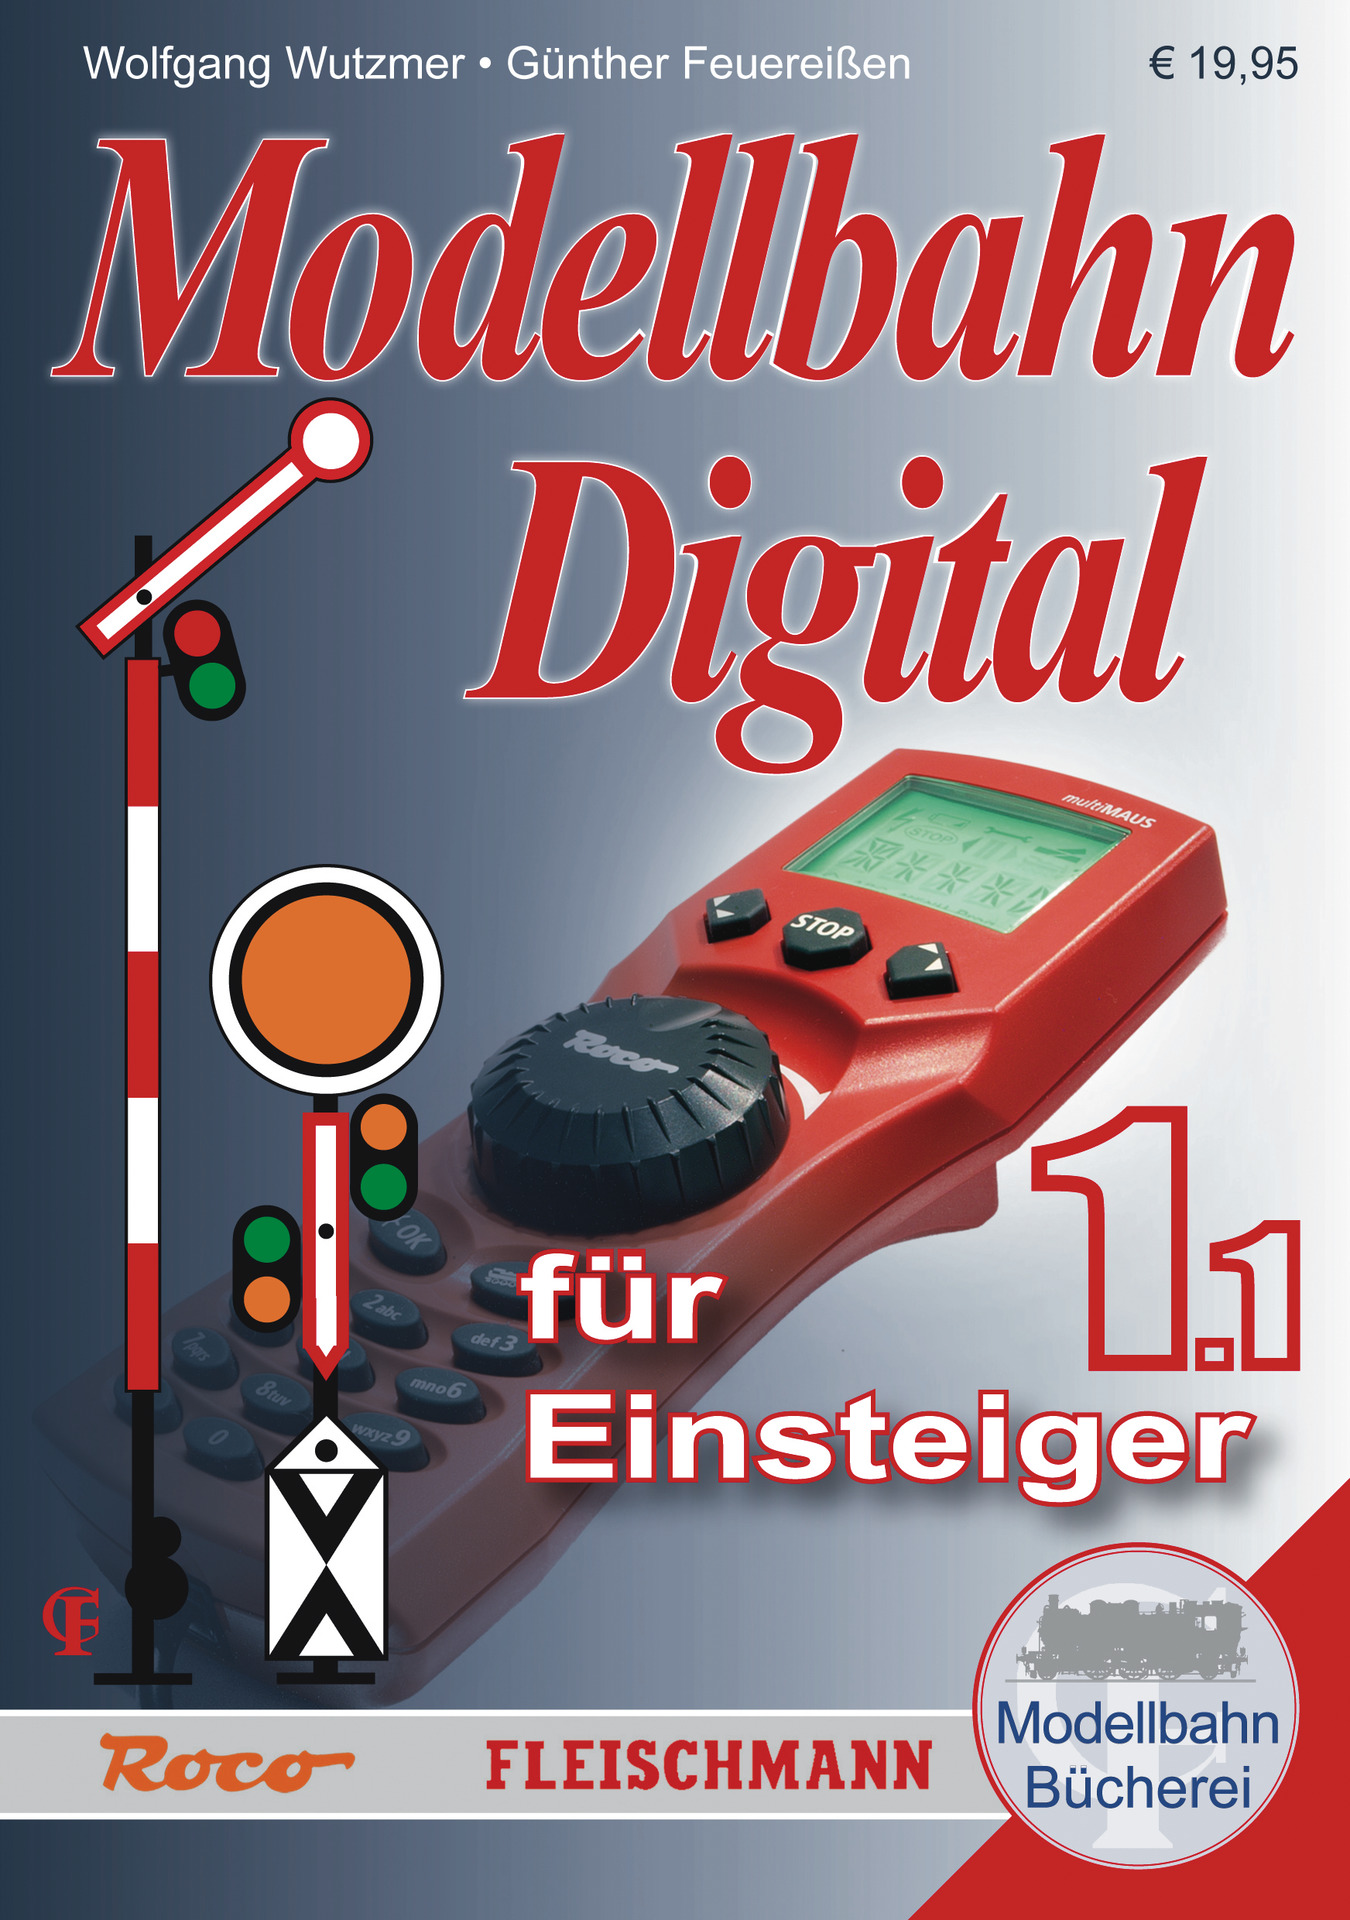 Roco Handbuch: Digital für Einsteiger, Band 1.1 (RO81385) von ROCO